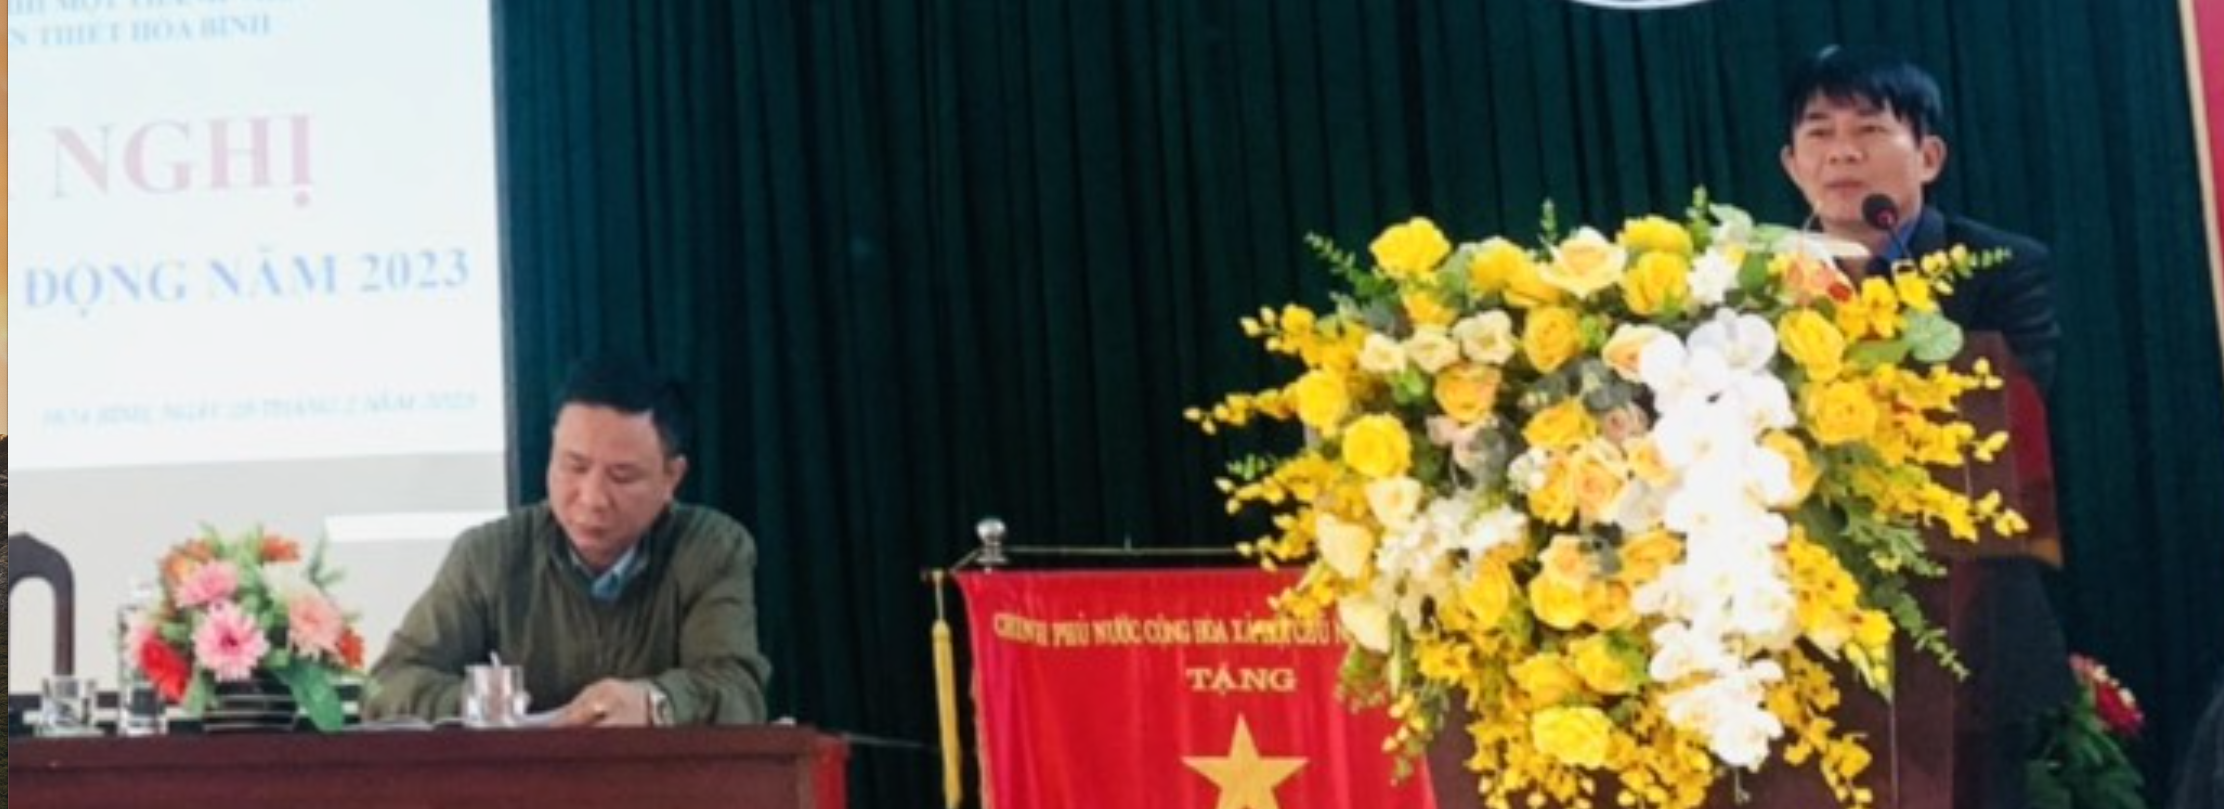 Được biết, Bí thư chi bộ, Chủ tịch kiêm Giám đốc Công ty TNHH Một thành viên xổ số kiến thiết Hòa Bình là ông Khương Minh Tuấn.